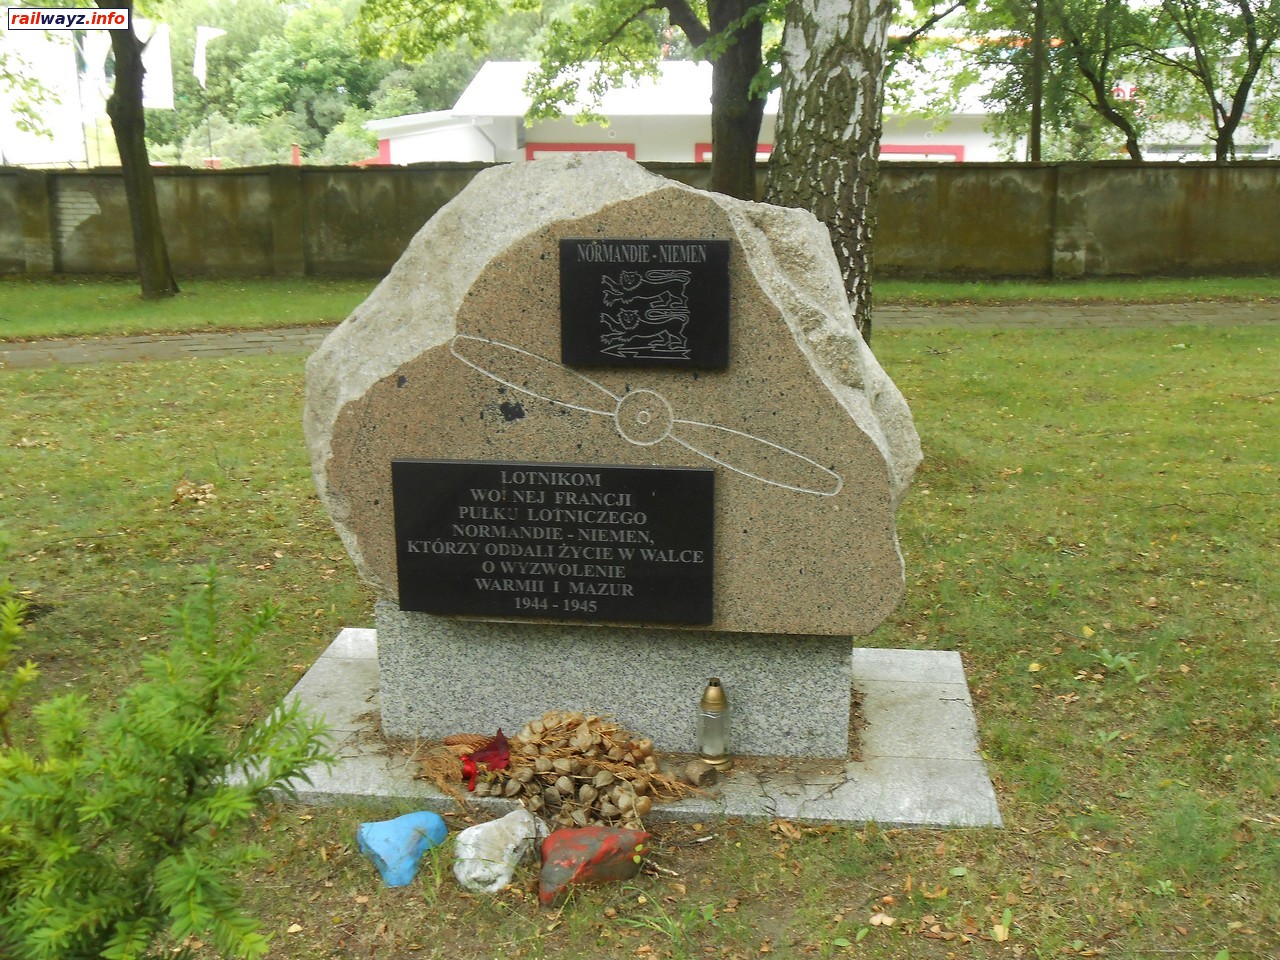 Памятник французским лётчикам полка "Нормандия-Нёман", Военное кладбище, Ольштын